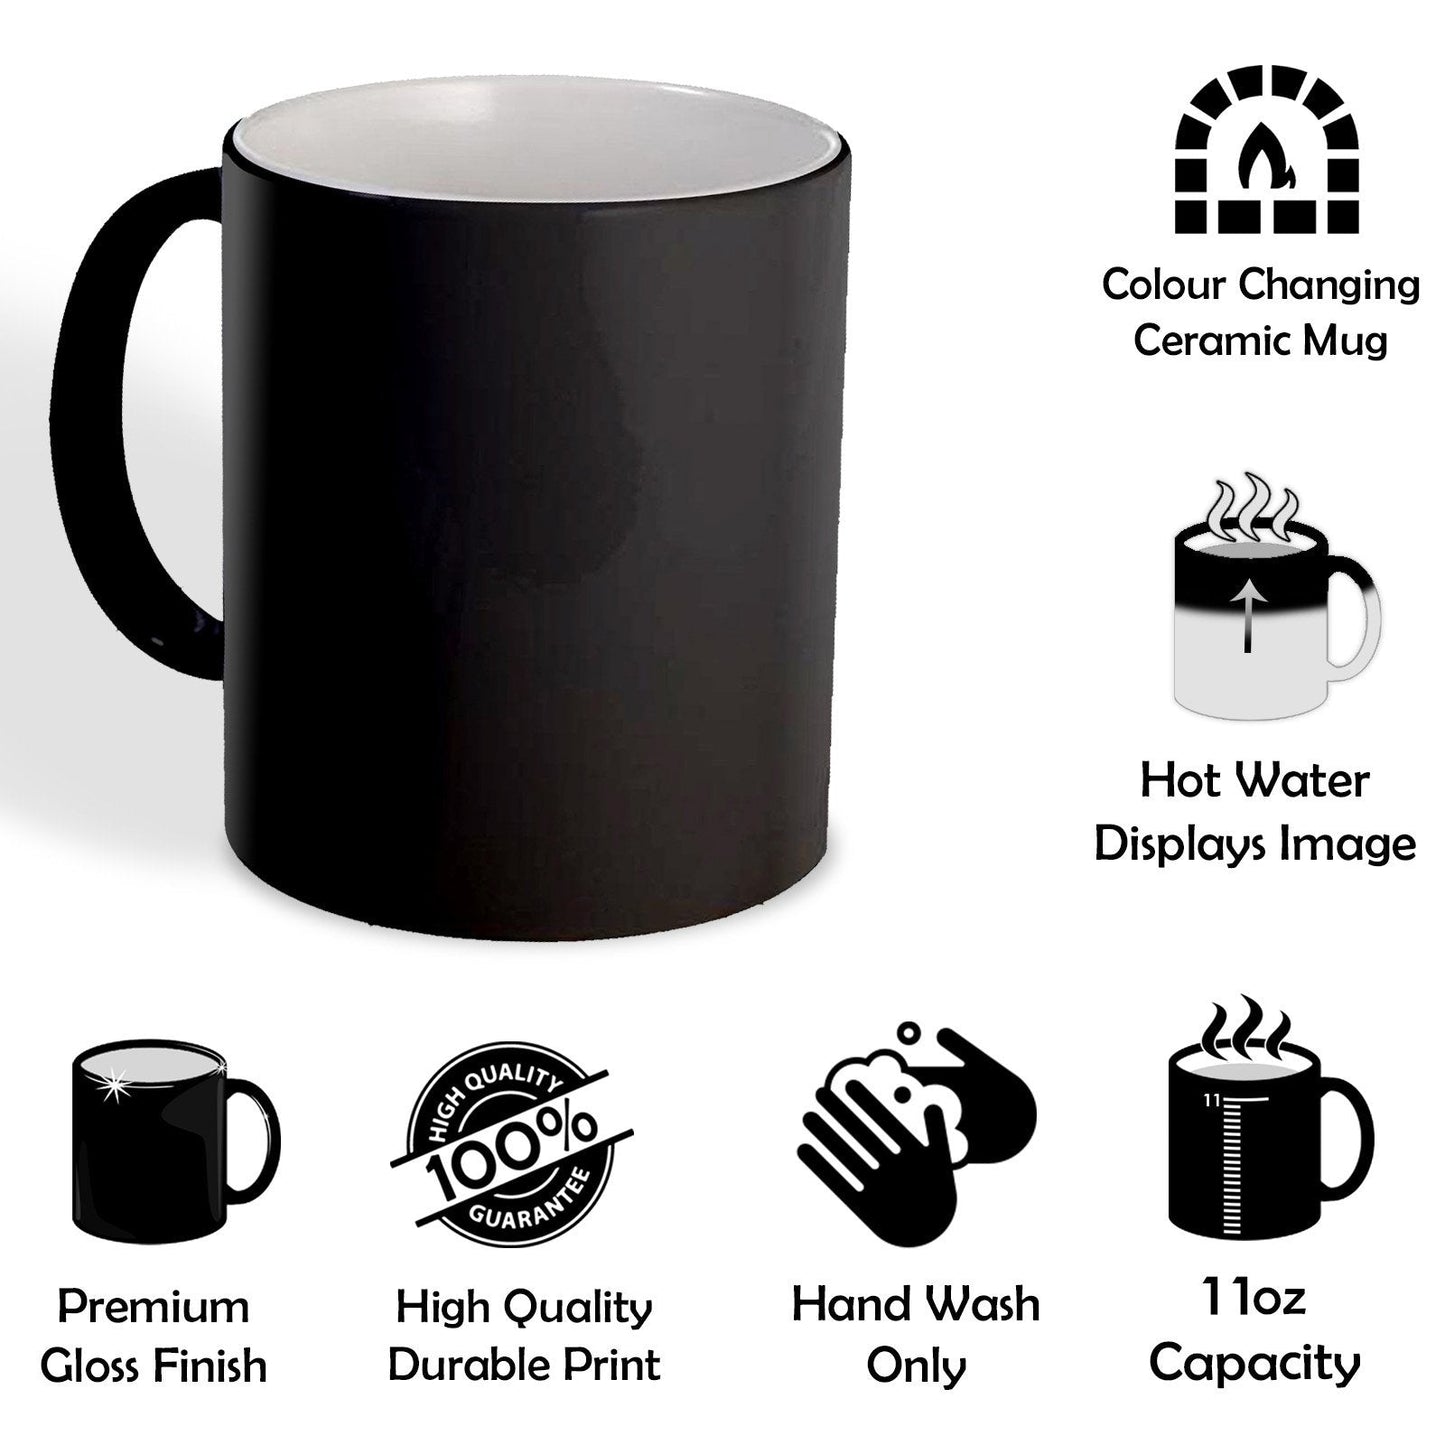 Personalised Mug with MUM Photo Collage